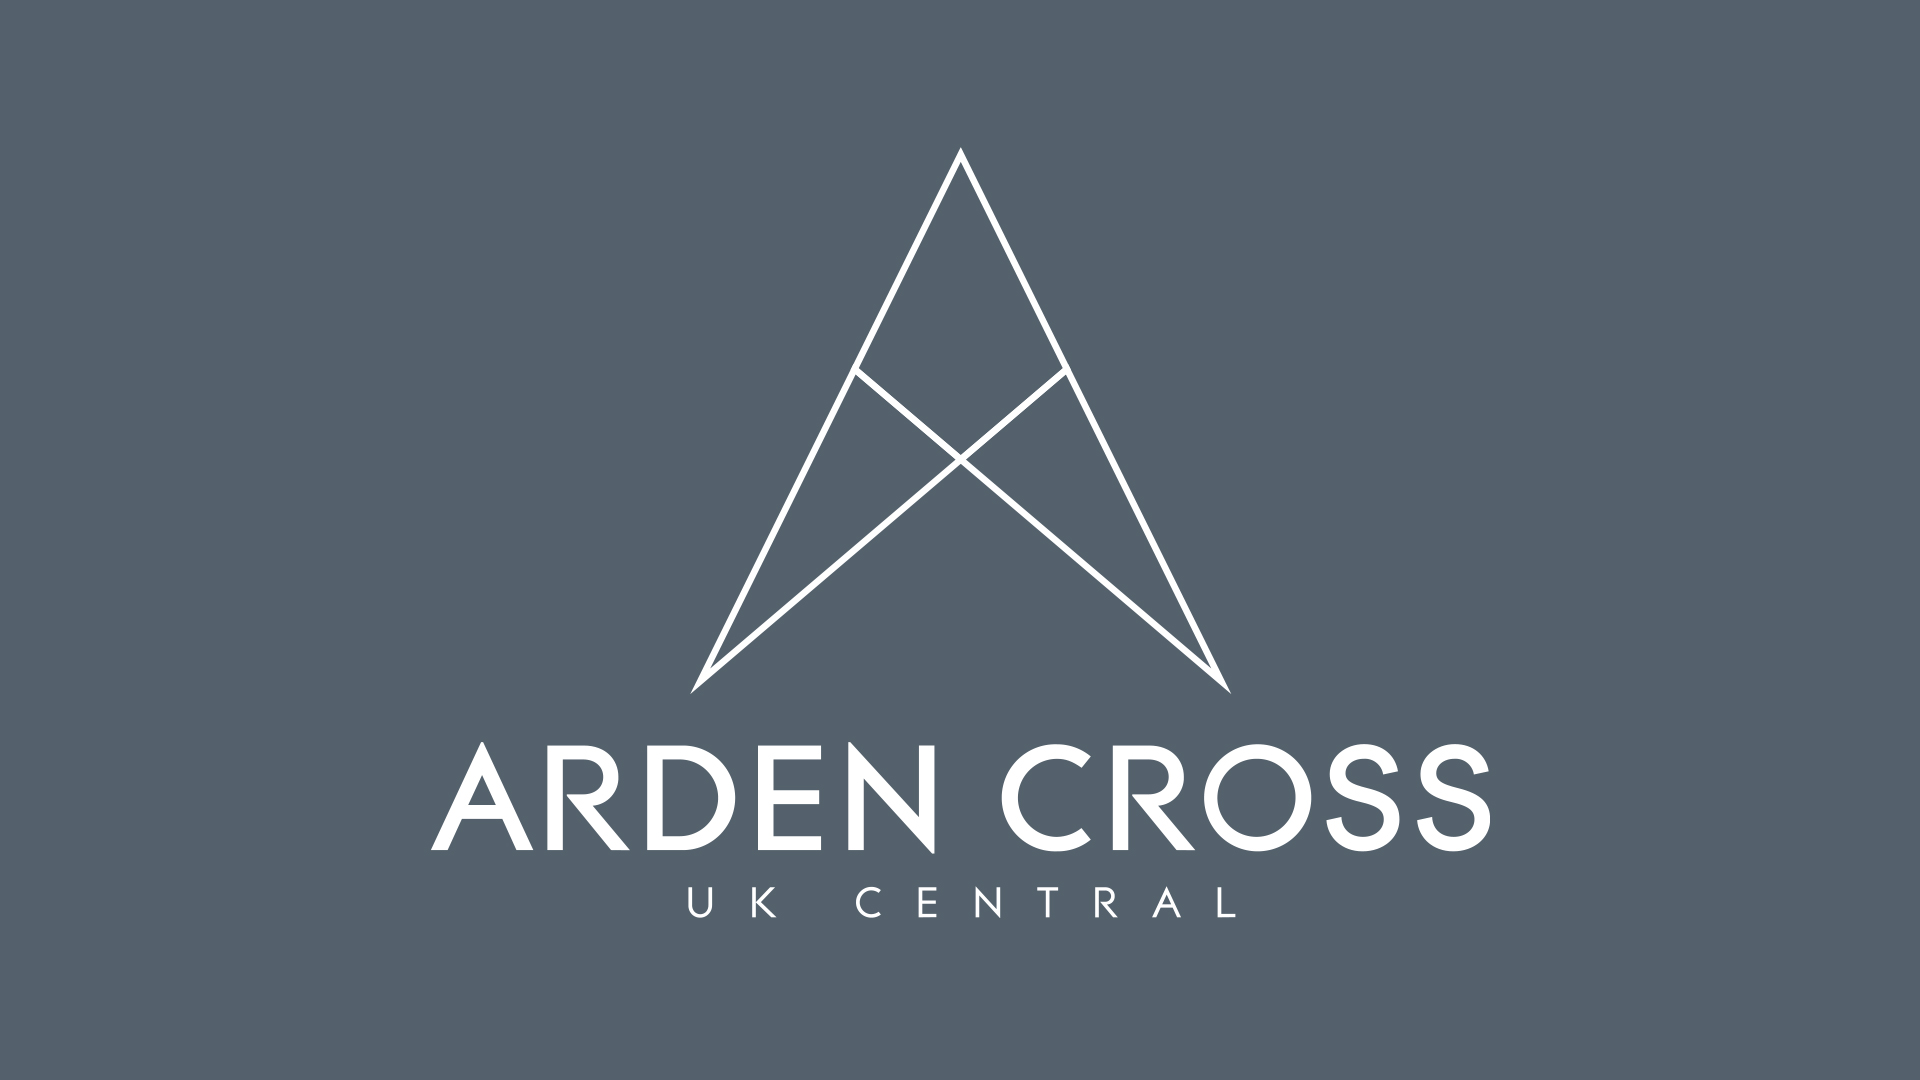 Arden Cross - UK Central.